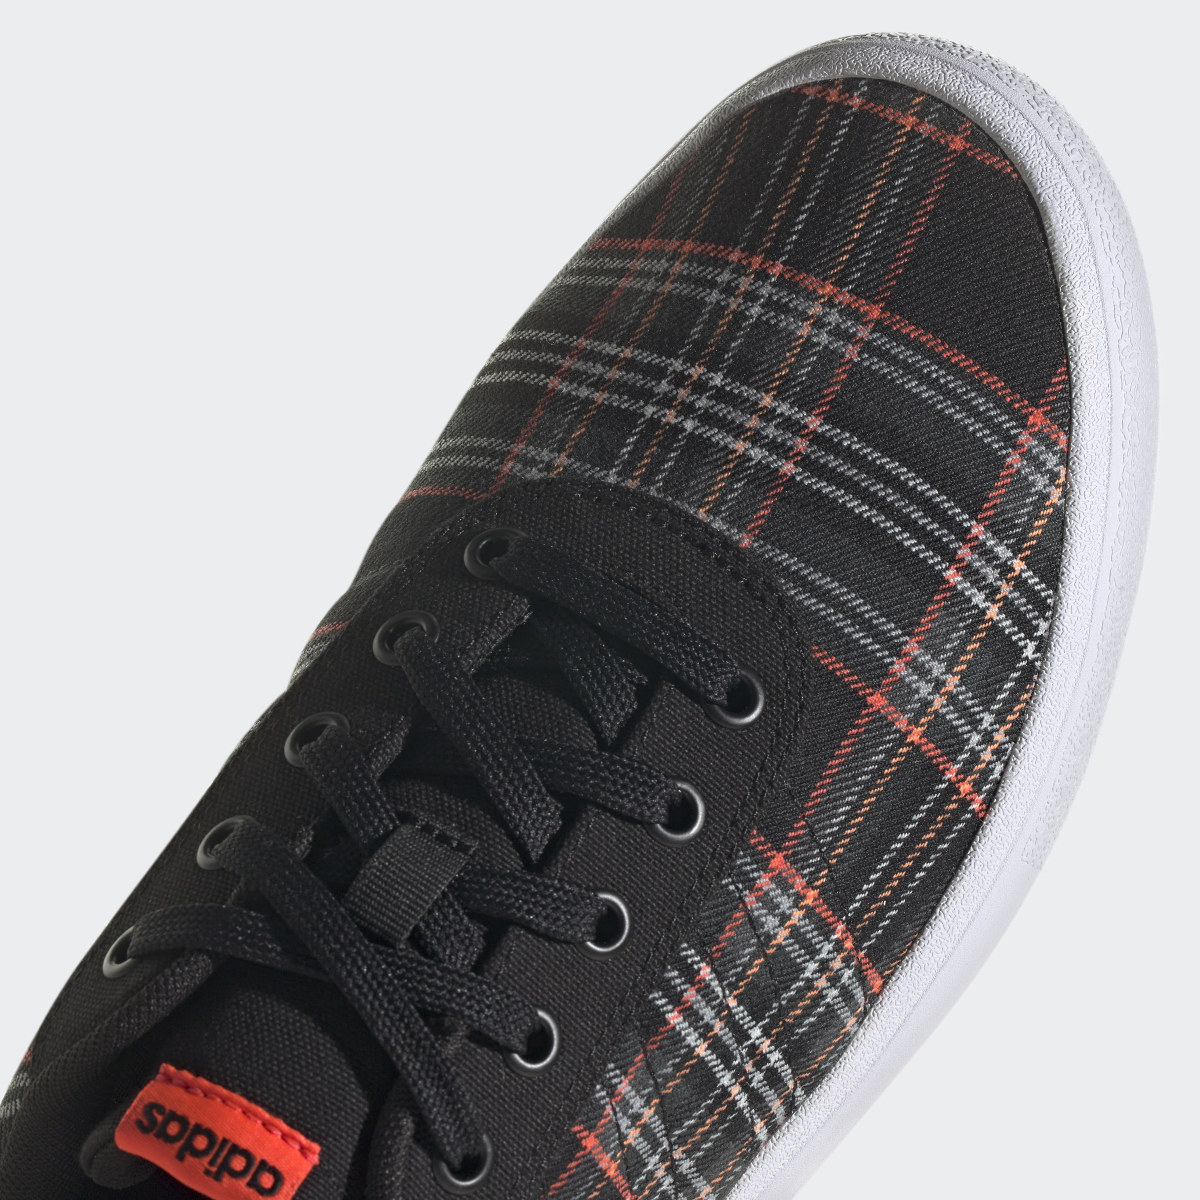 Adidas Chaussure Vulc Raid3r Lifestyle Skateboarding 3-Stripes Branding. 10